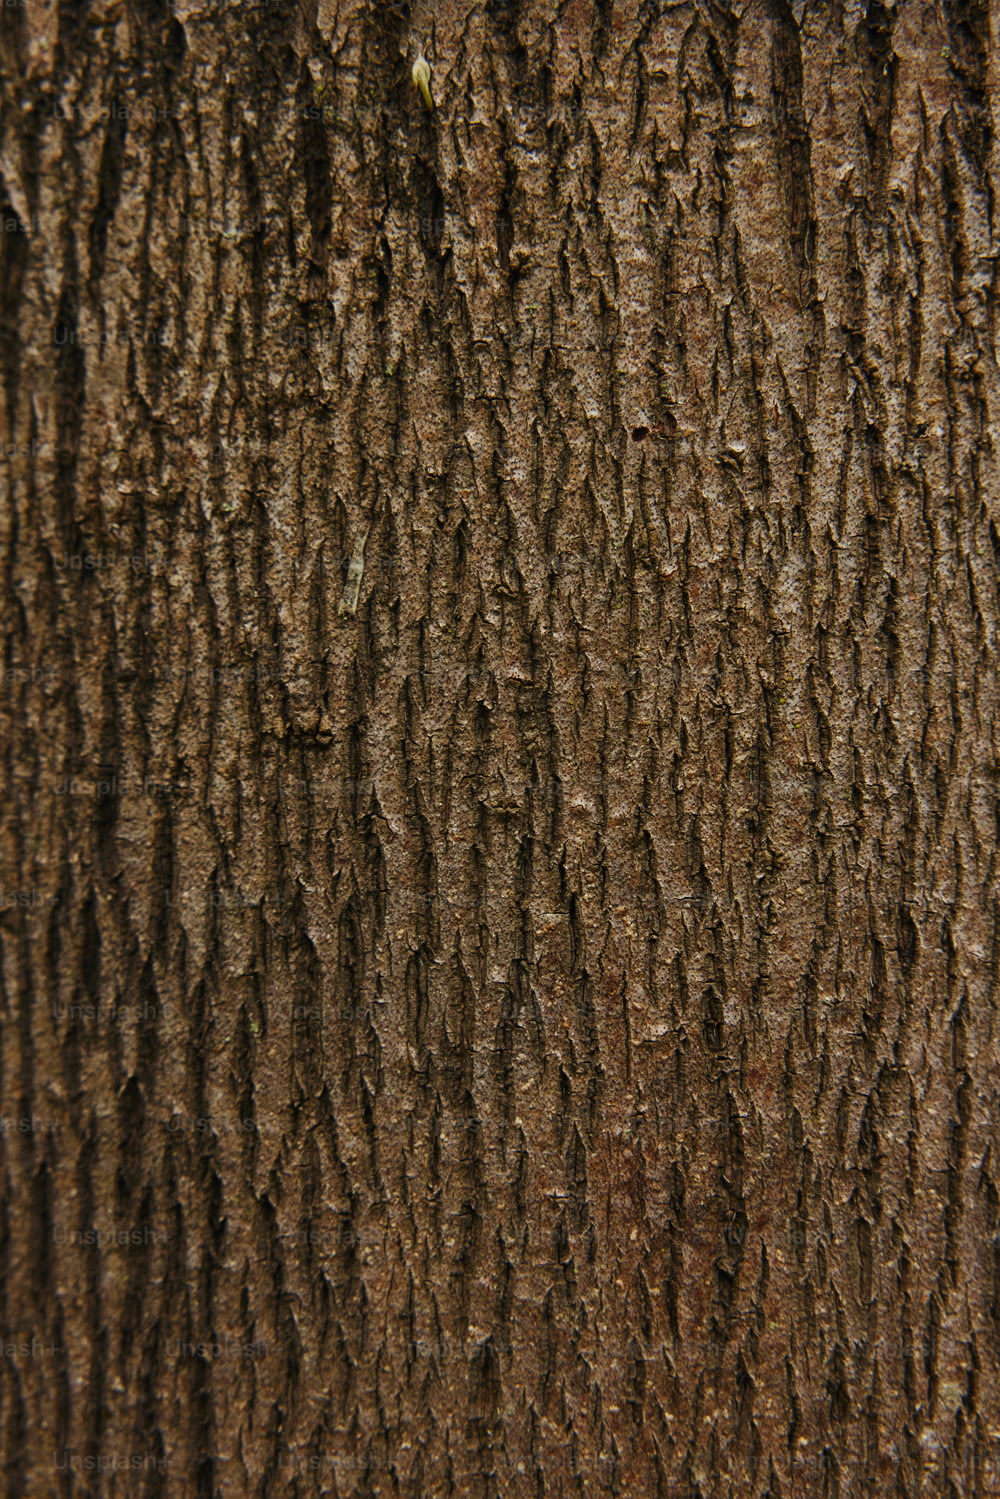 um close up da casca de uma árvore